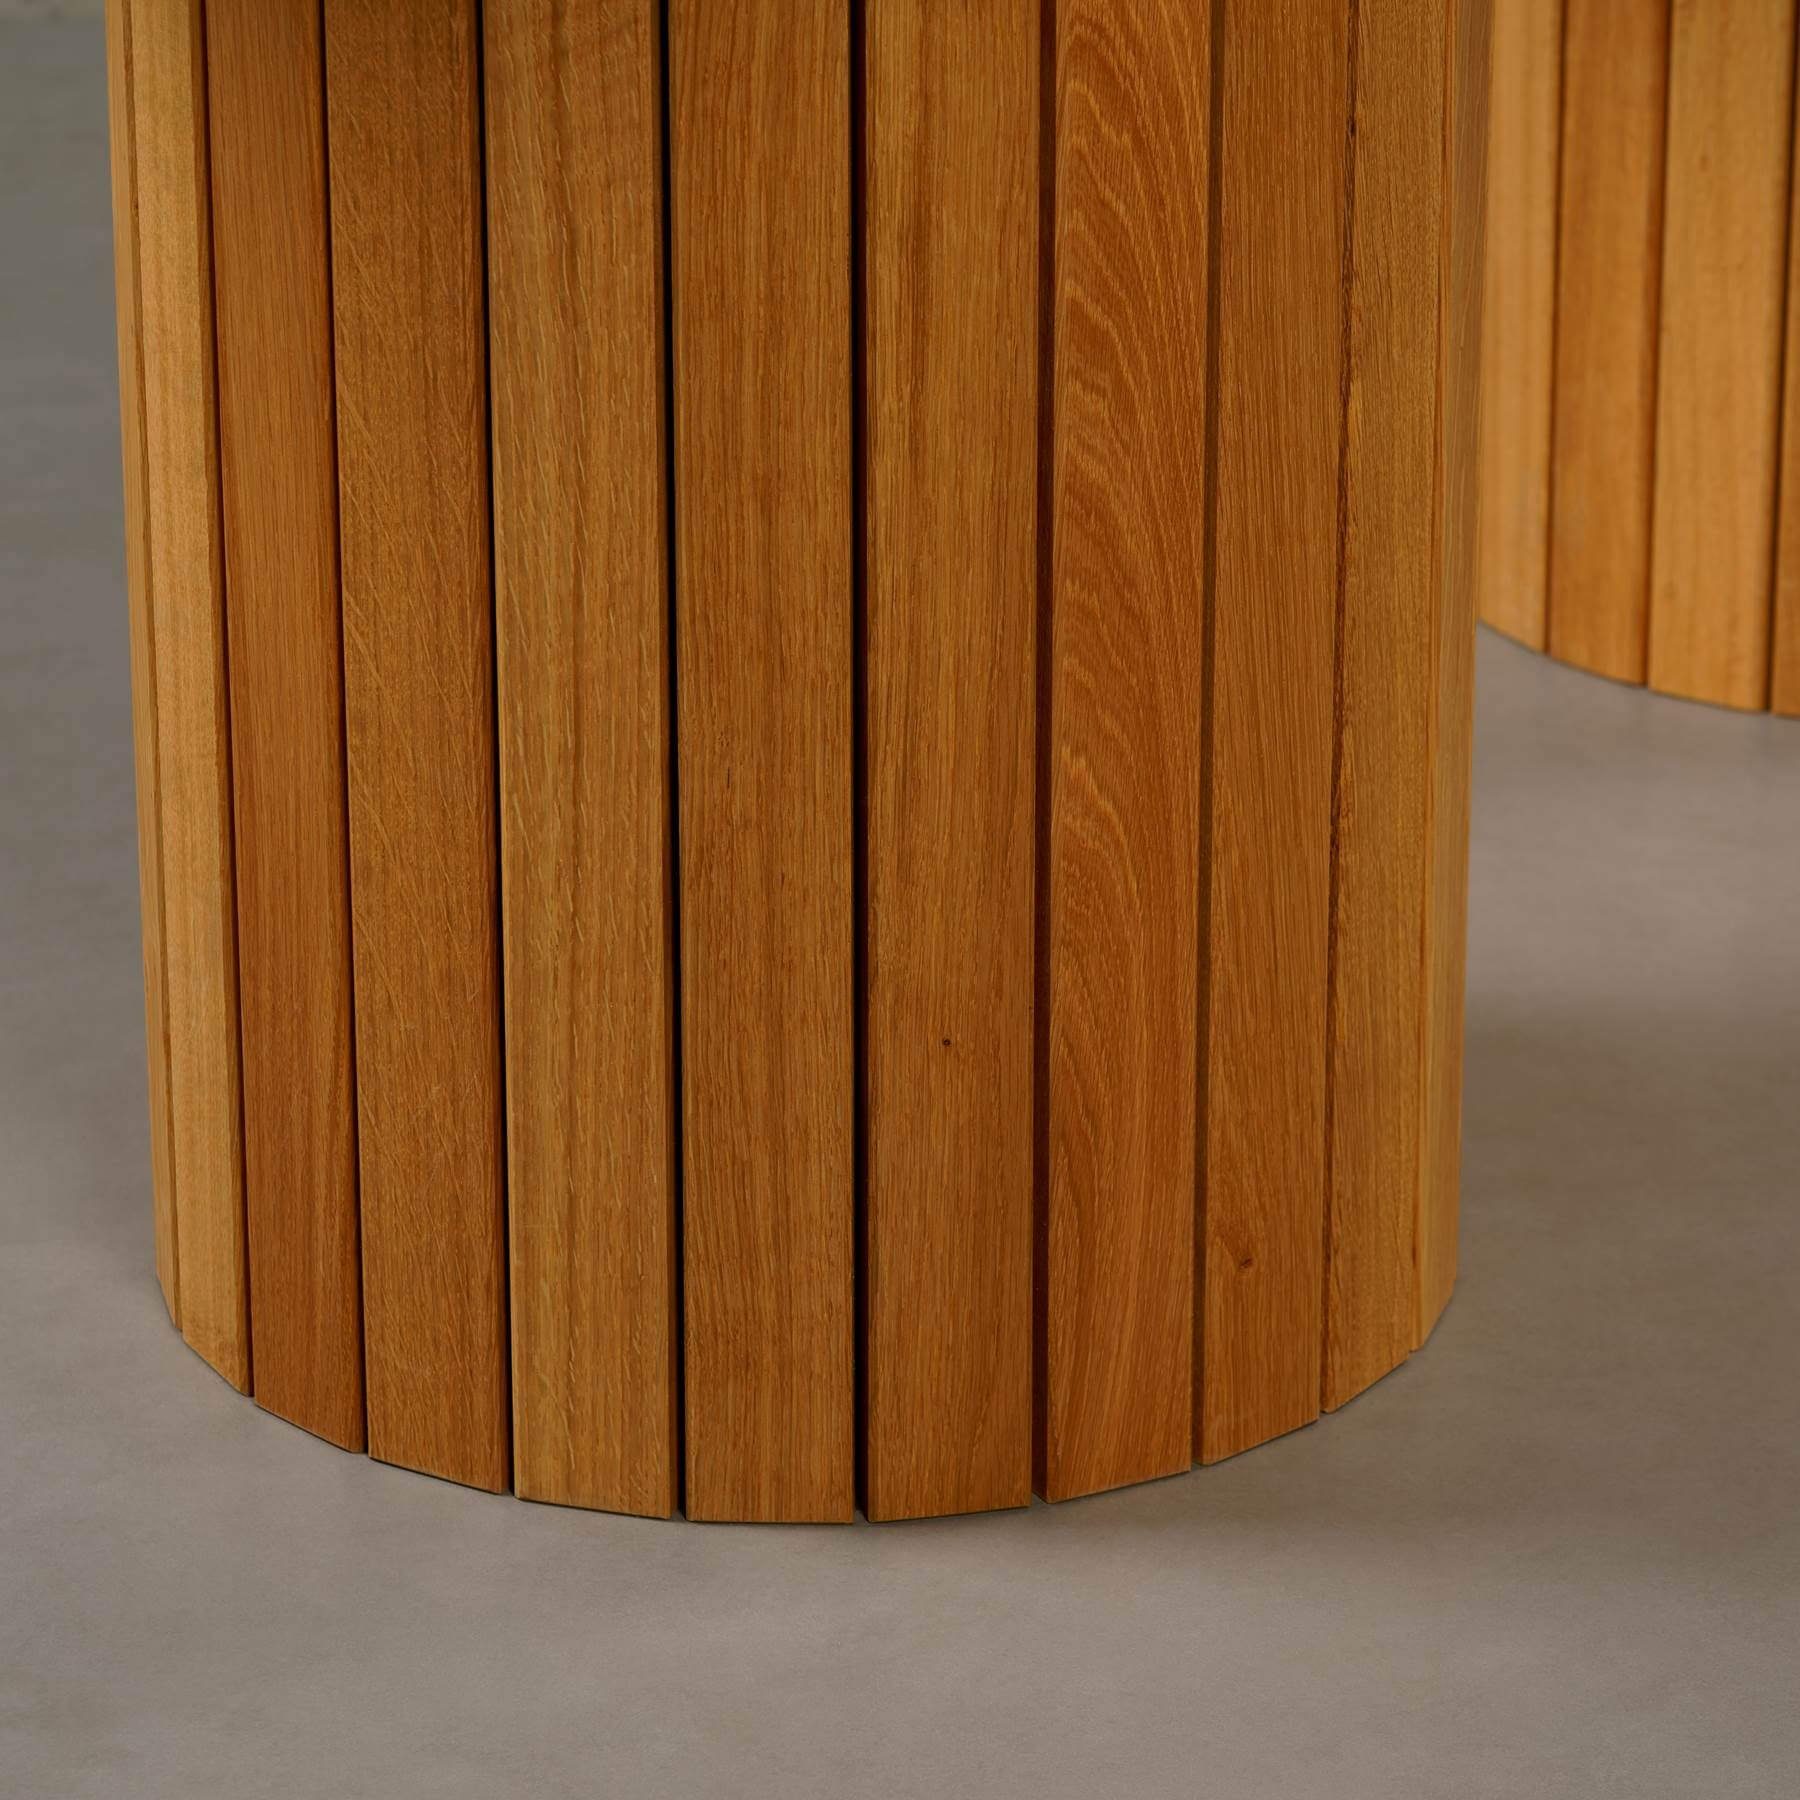 MAGNA Atelier ECHTEM Esstisch mit Grigio Eichenholz Gestell, Montana rund, Tisch 200x100x76cm MARMOR, Marquina Esstisch